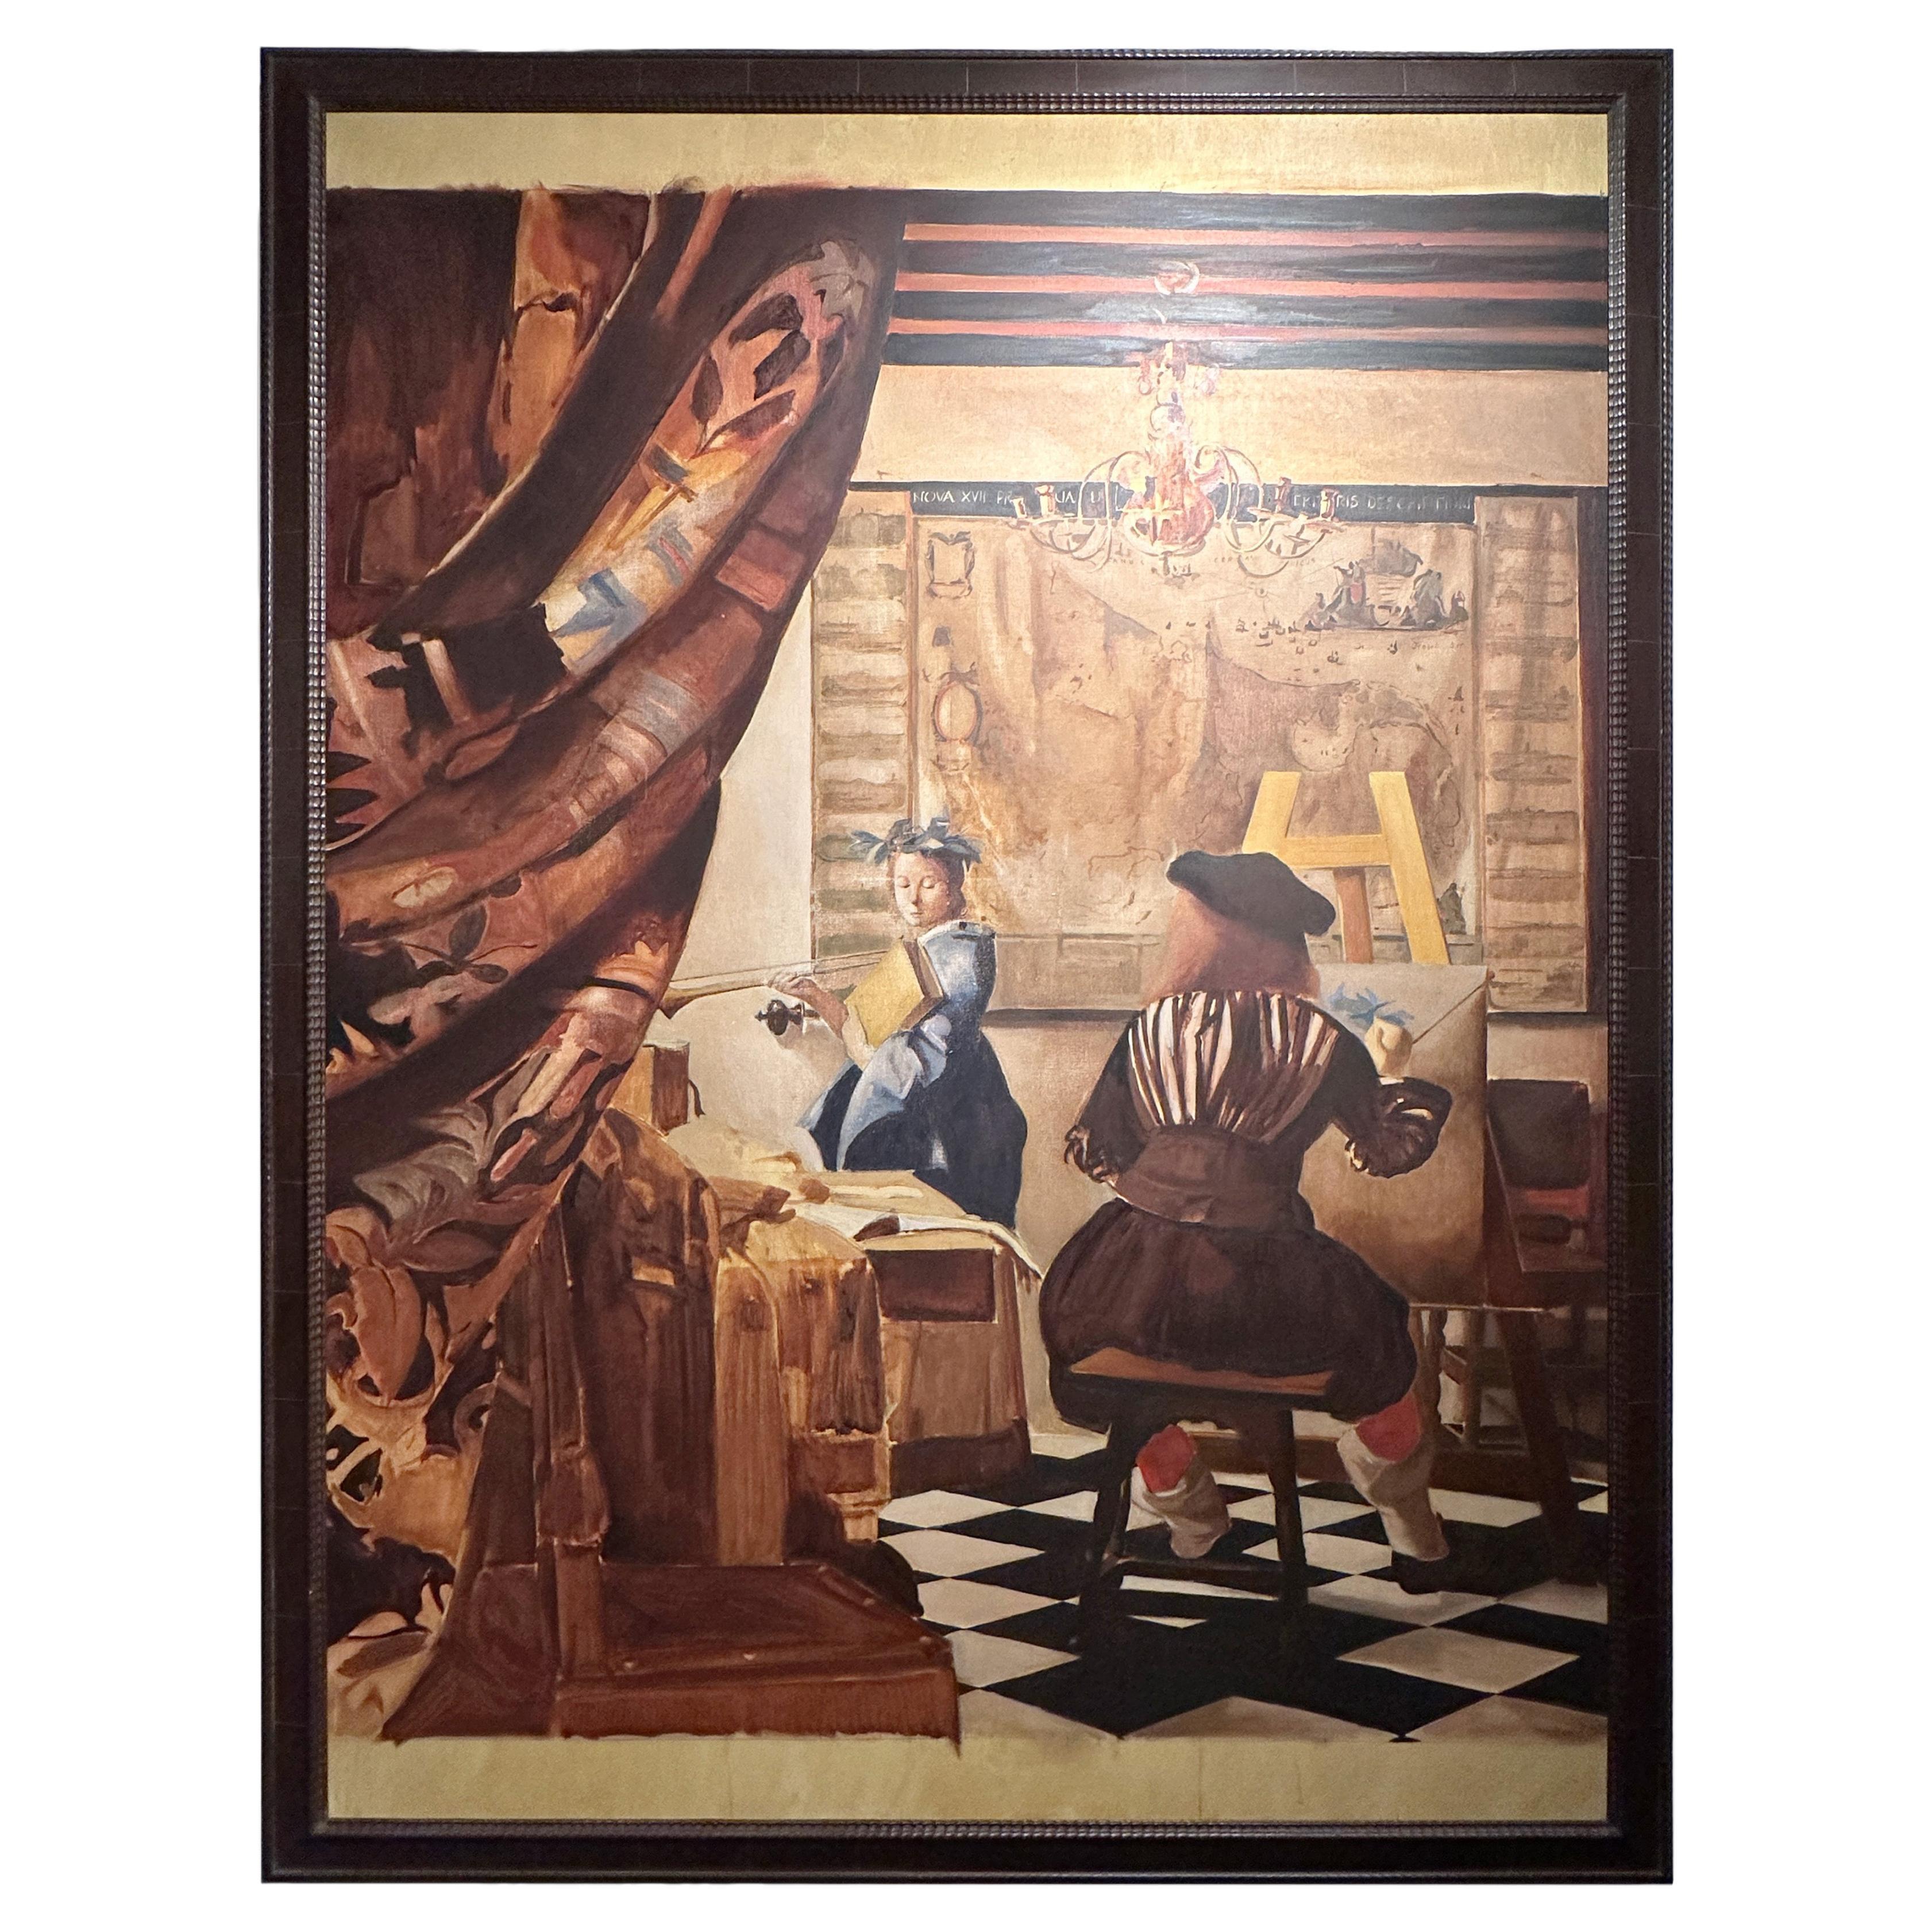 Santiago Uribe Holguin Painting "El Gran Vermeer", 1996-97